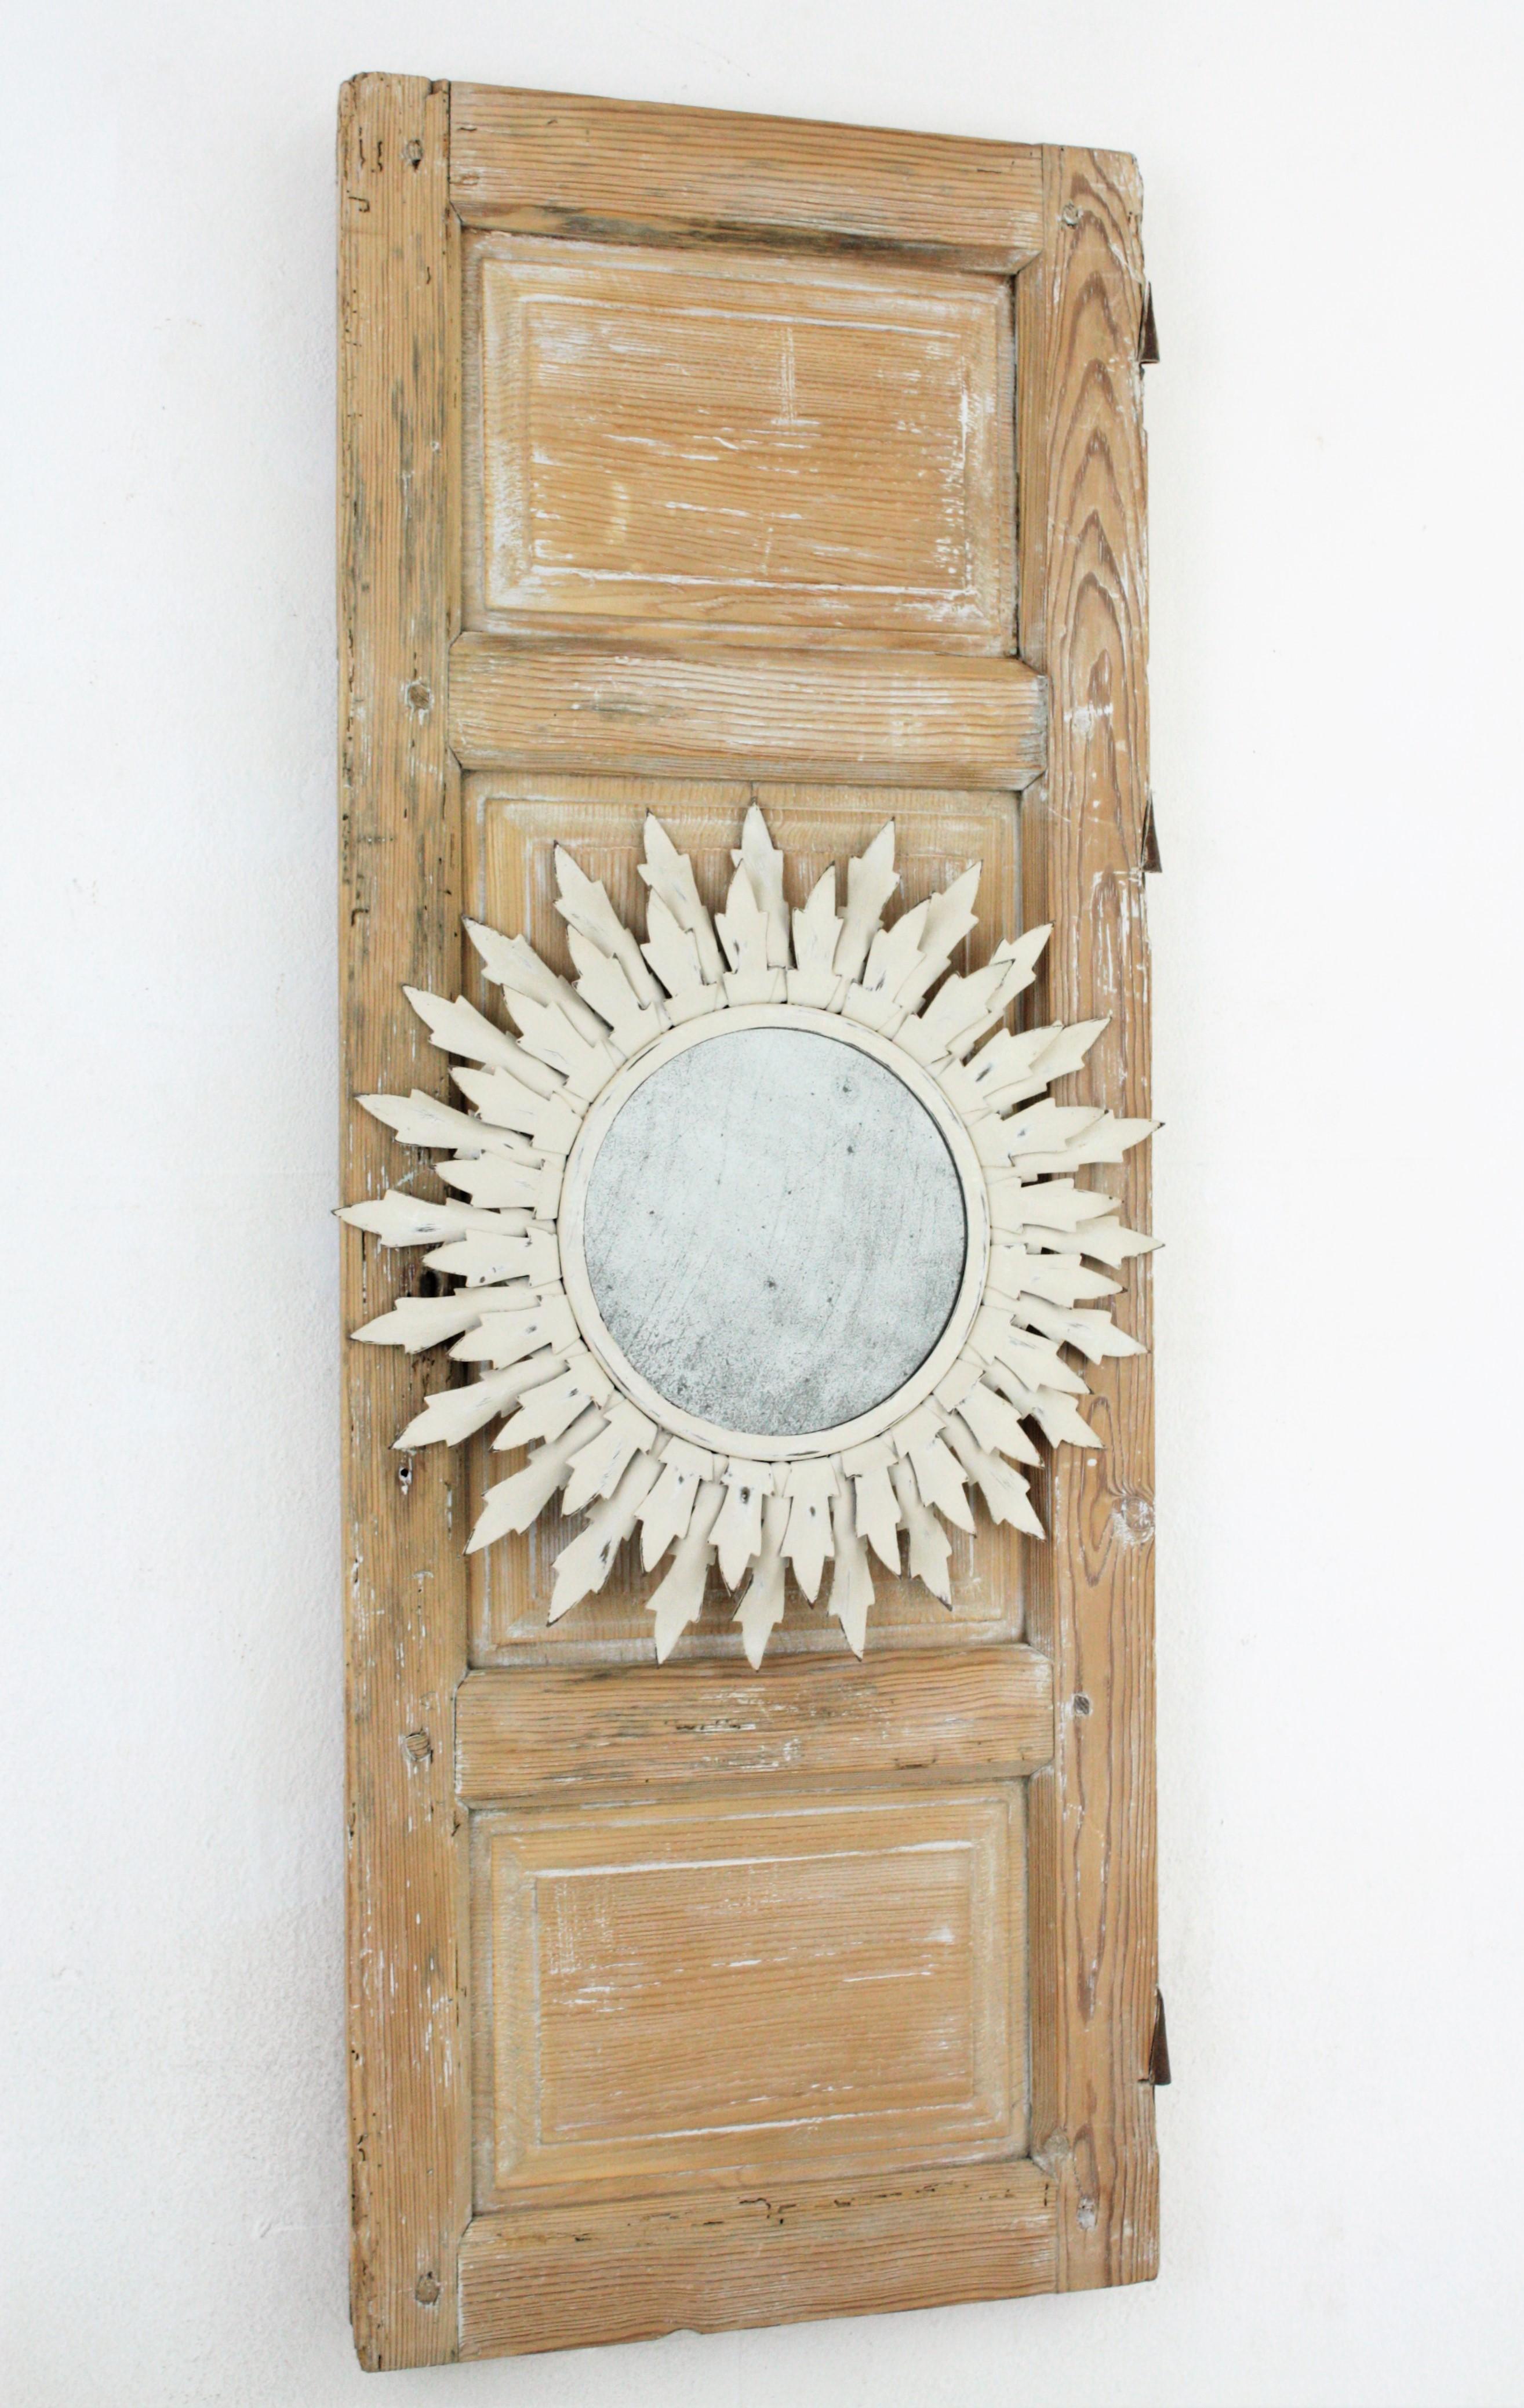 Miroir en forme de soleil à patine blanche sur une porte ancienne en bois, présenté comme un miroir Trumeau.
Ce miroir mural présente un miroir ensoleillé peint en blanc des années 1960 encadré sur une porte espagnole du XVIIIe siècle. La porte a